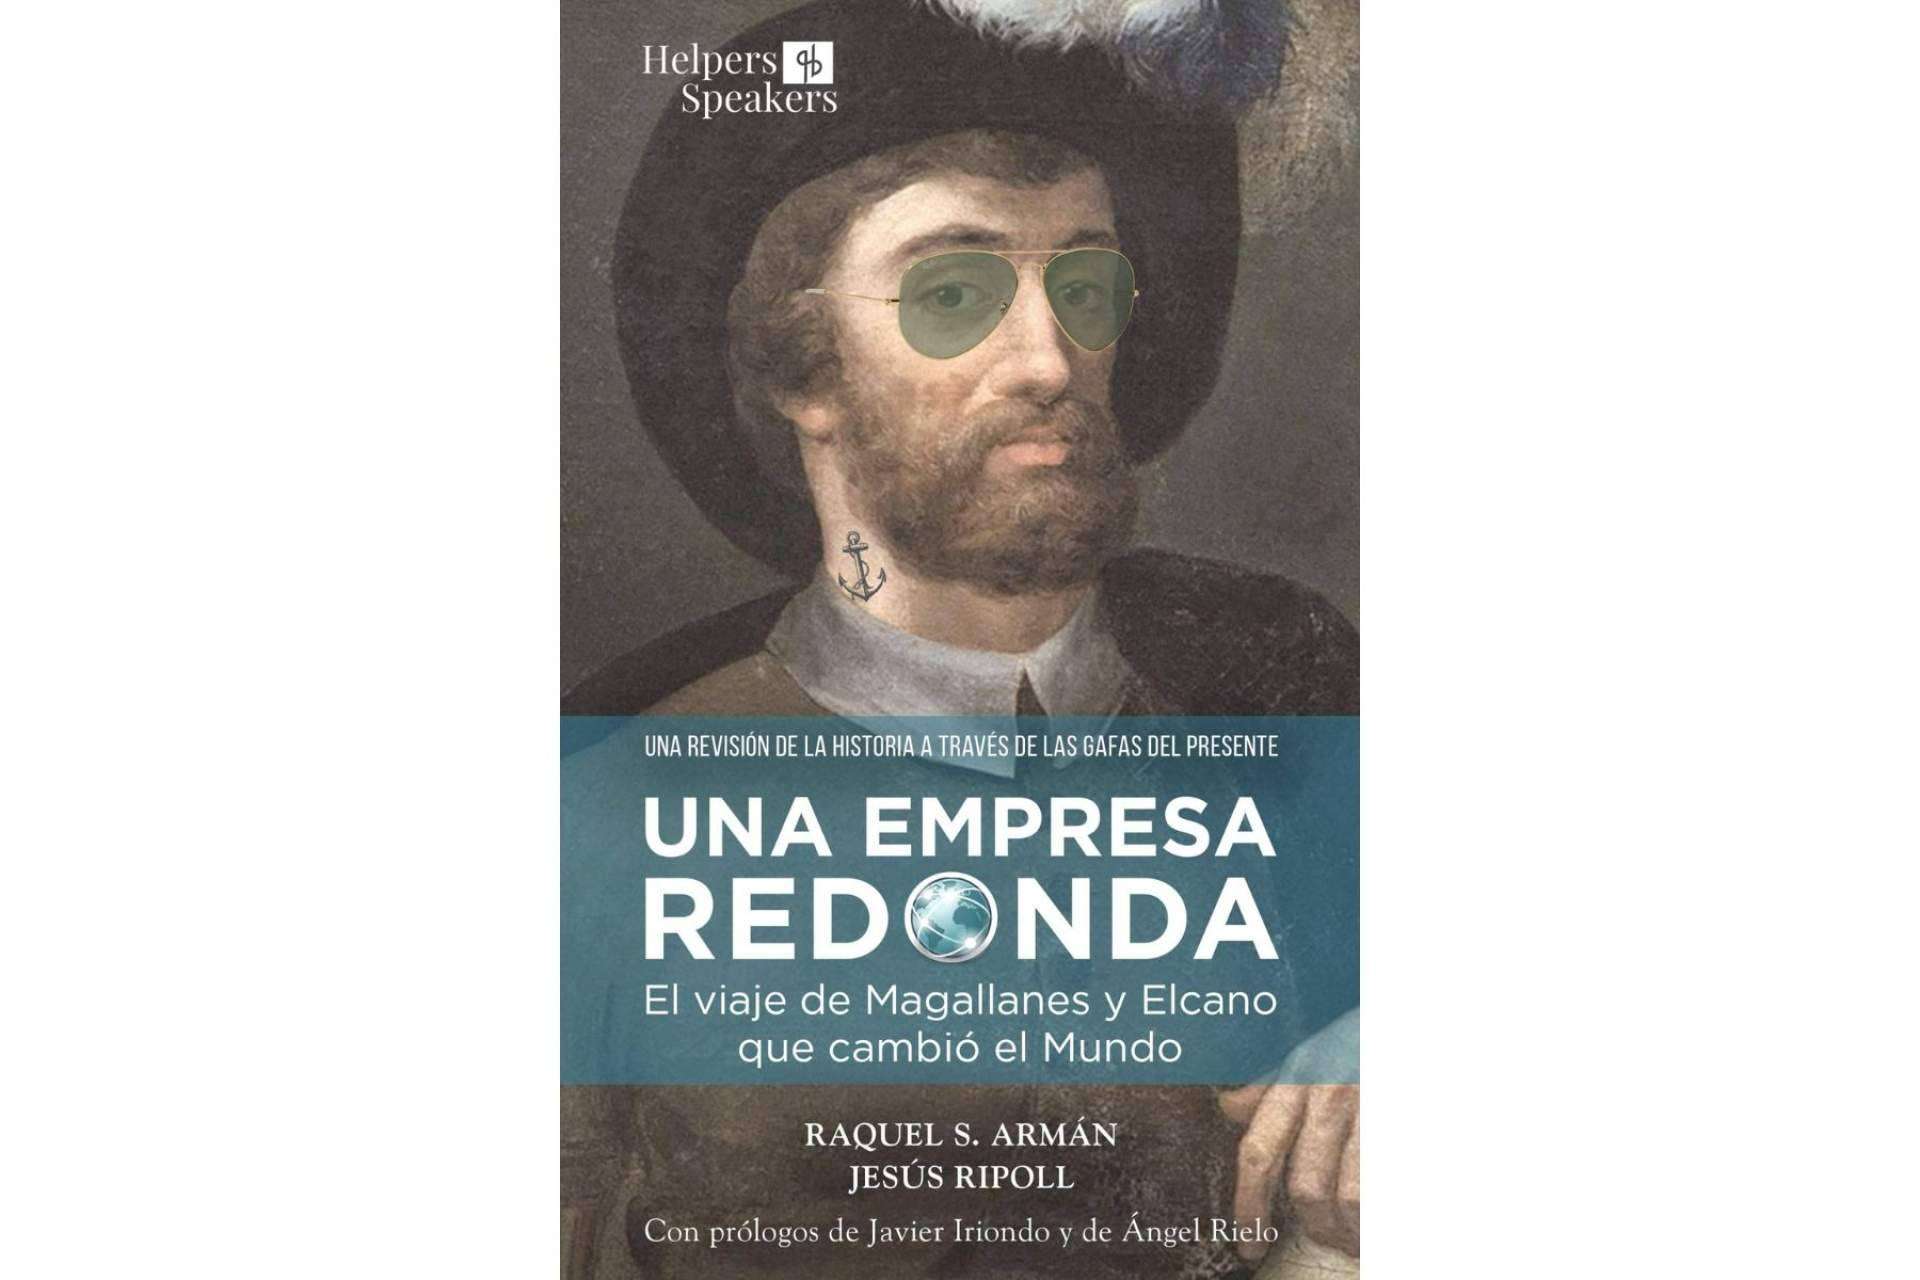 Historia real y entretenimiento en el libro Una empresa redonda, el viaje de Magallanes y Elcano que cambió el mundo